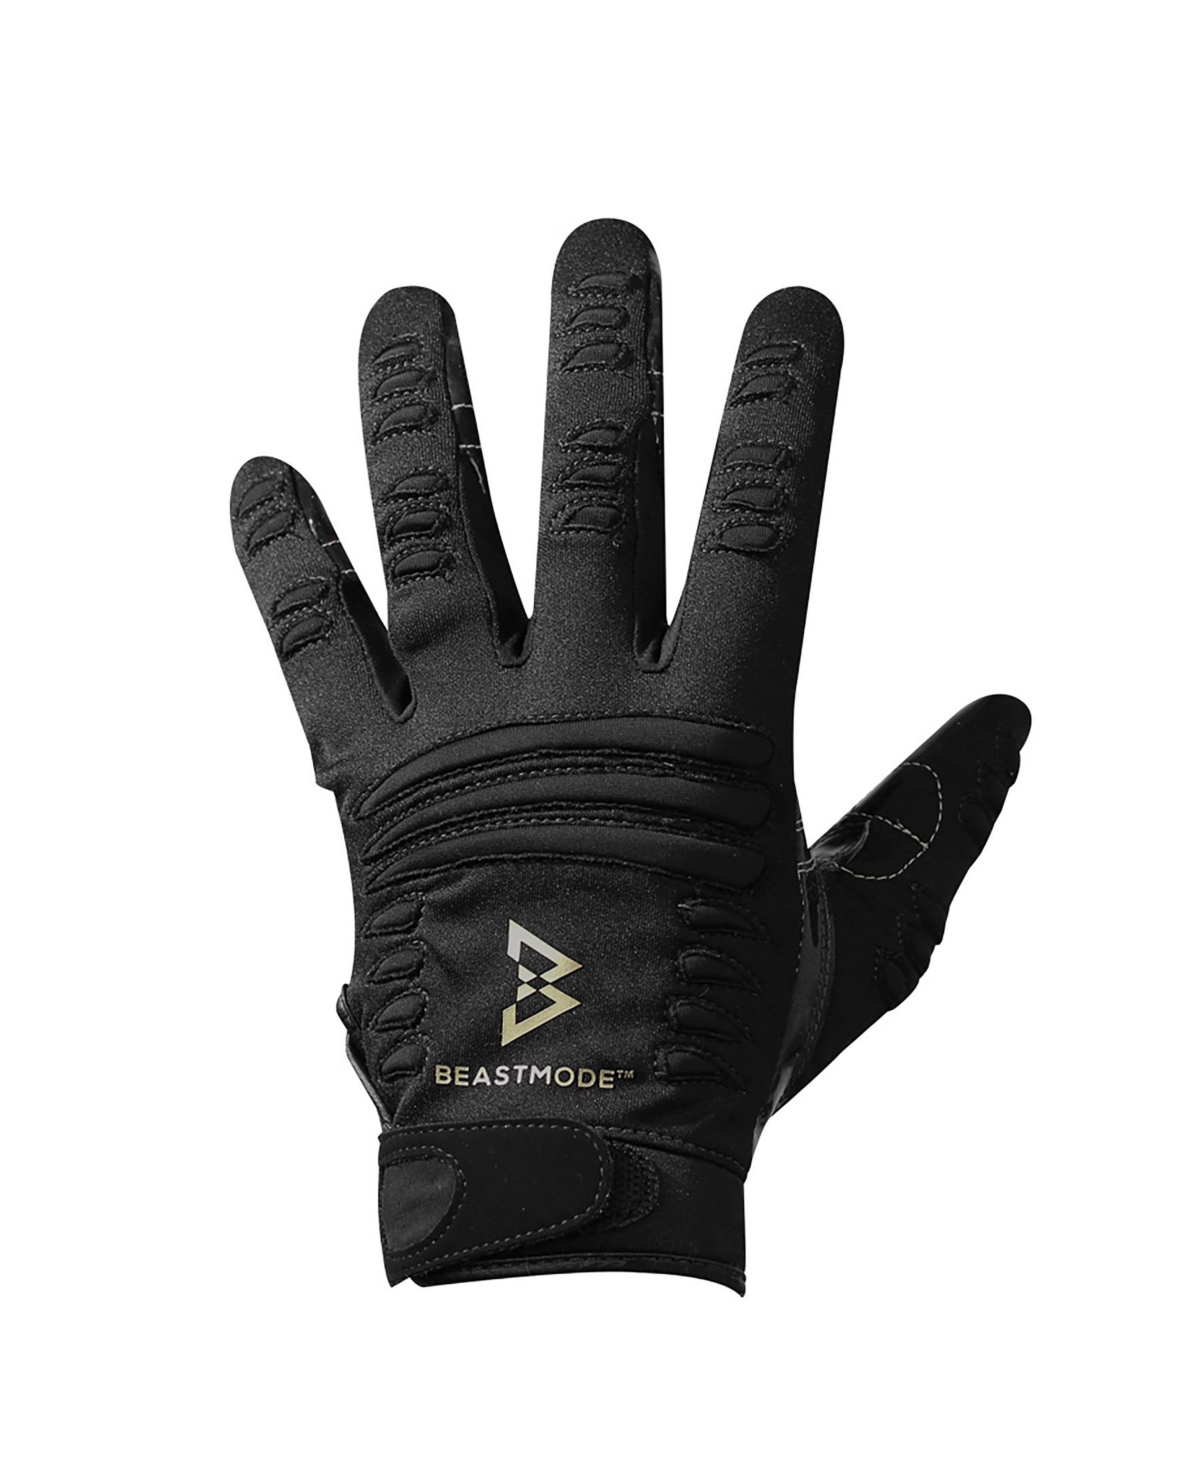 Men's Beastmode Football Gloves - Black